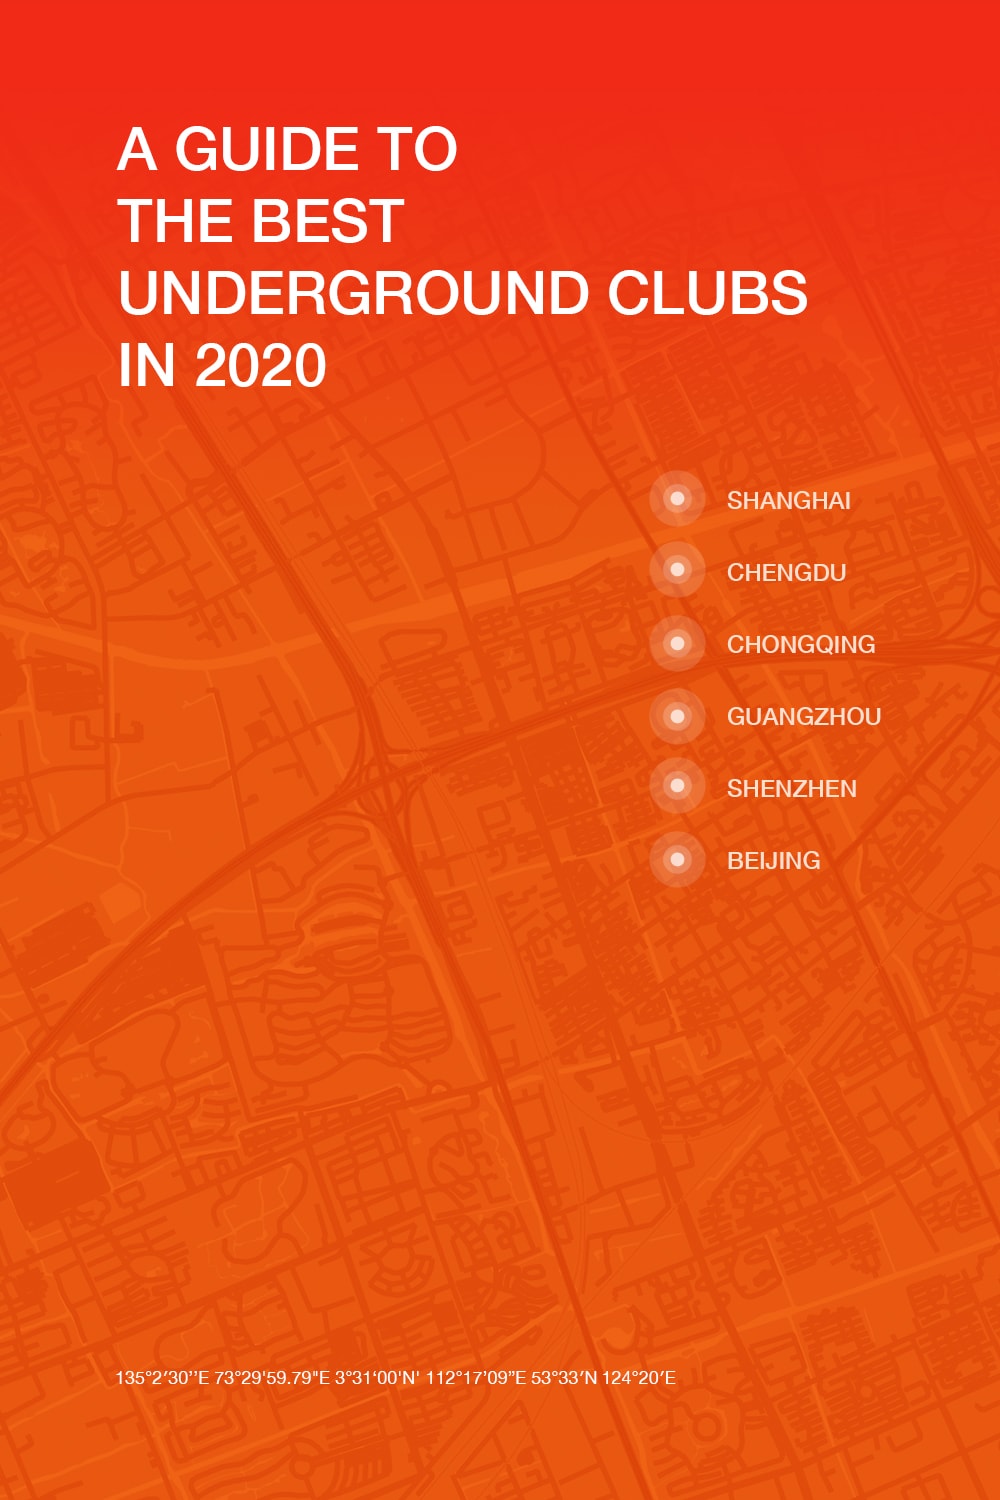 中國 6 城音樂人推薦的 15 間地下音樂俱樂部 | 2020 地下音樂俱樂部指南